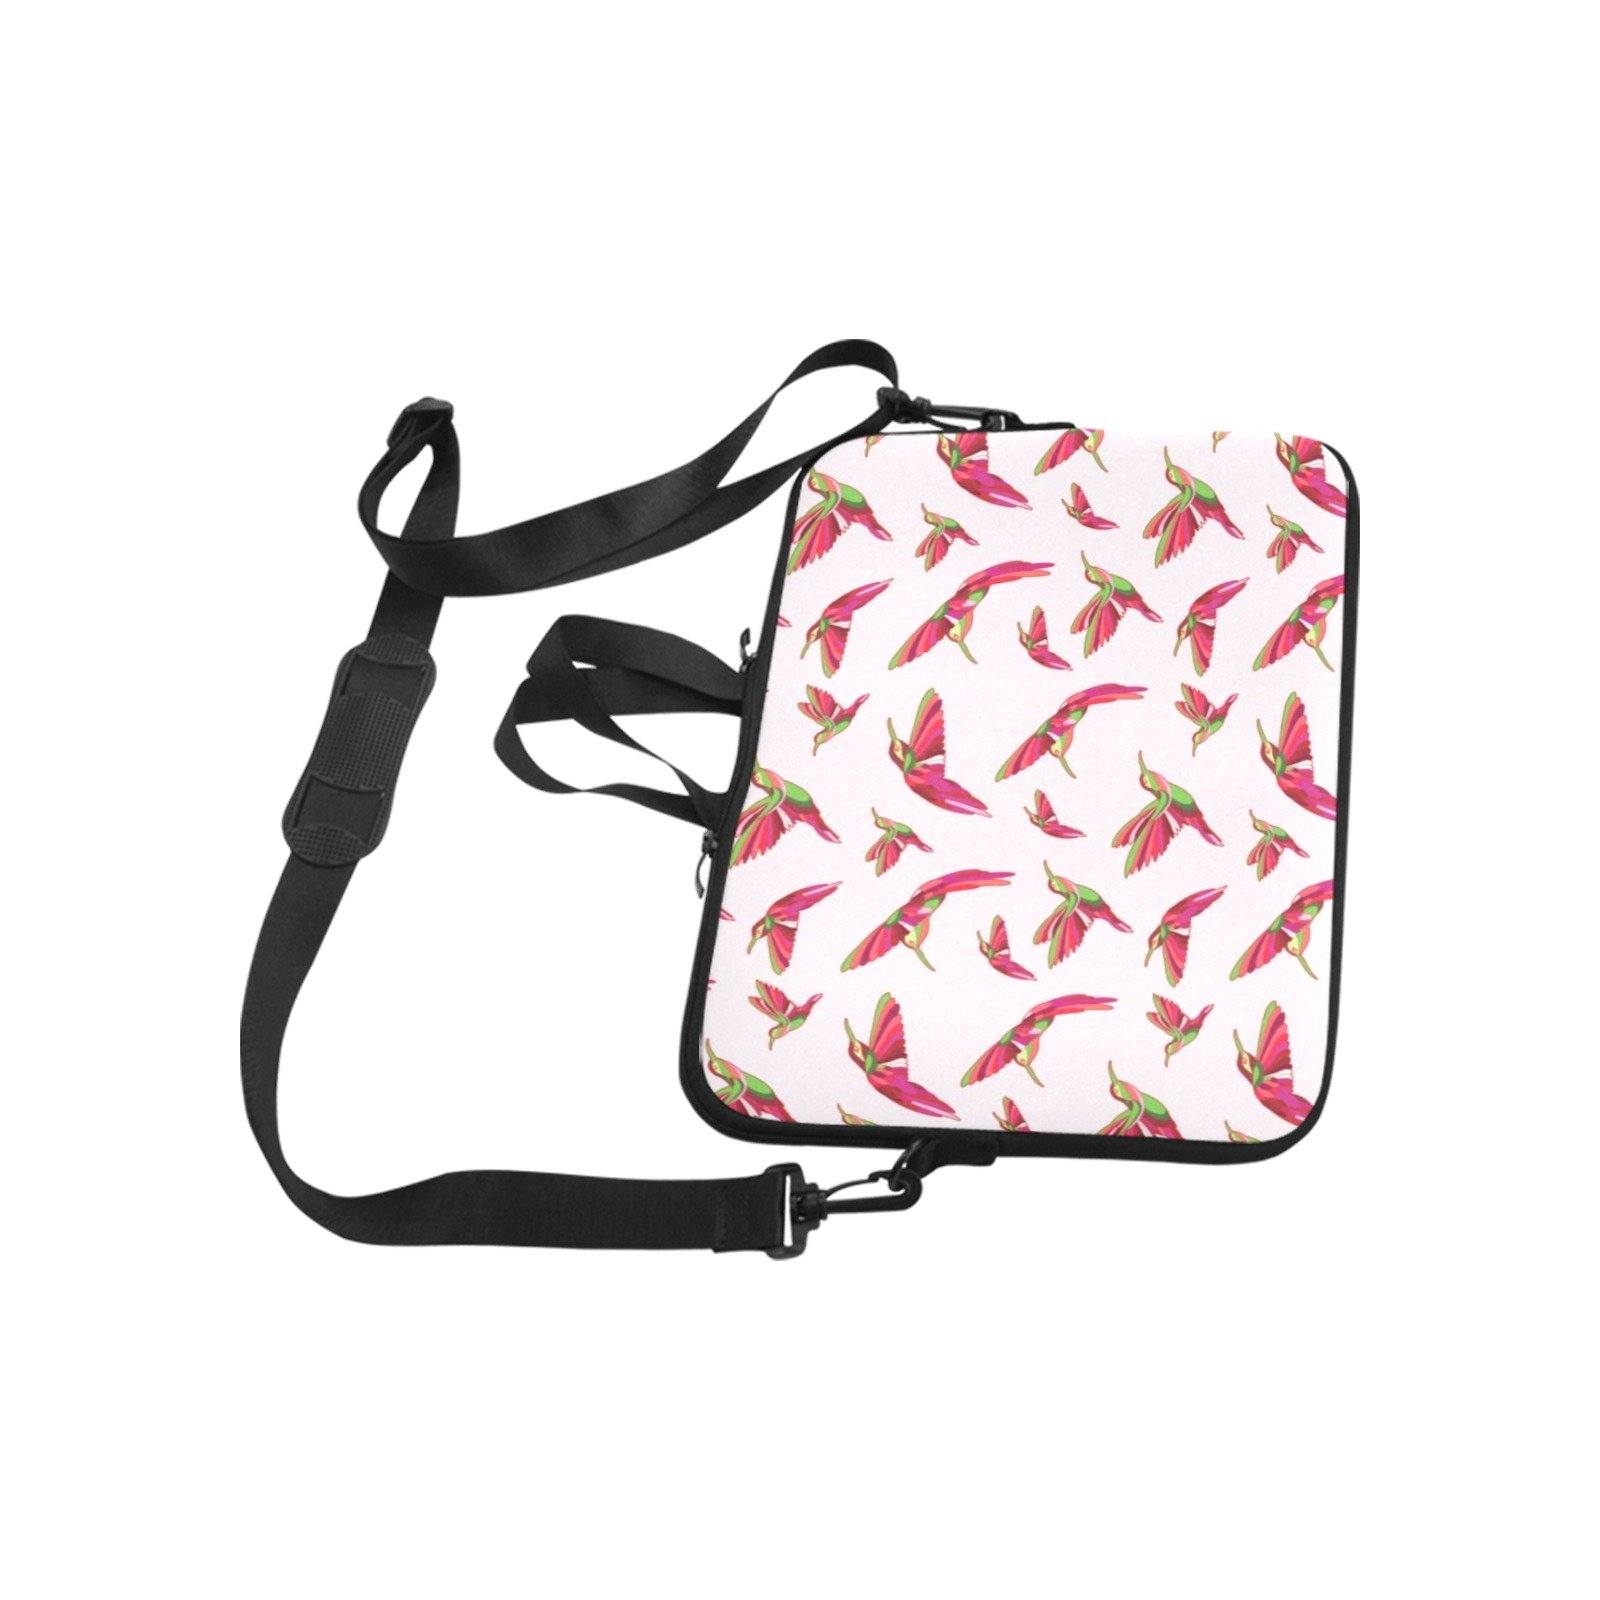 Red Swift Colourful Laptop Handbags 14" bag e-joyer 